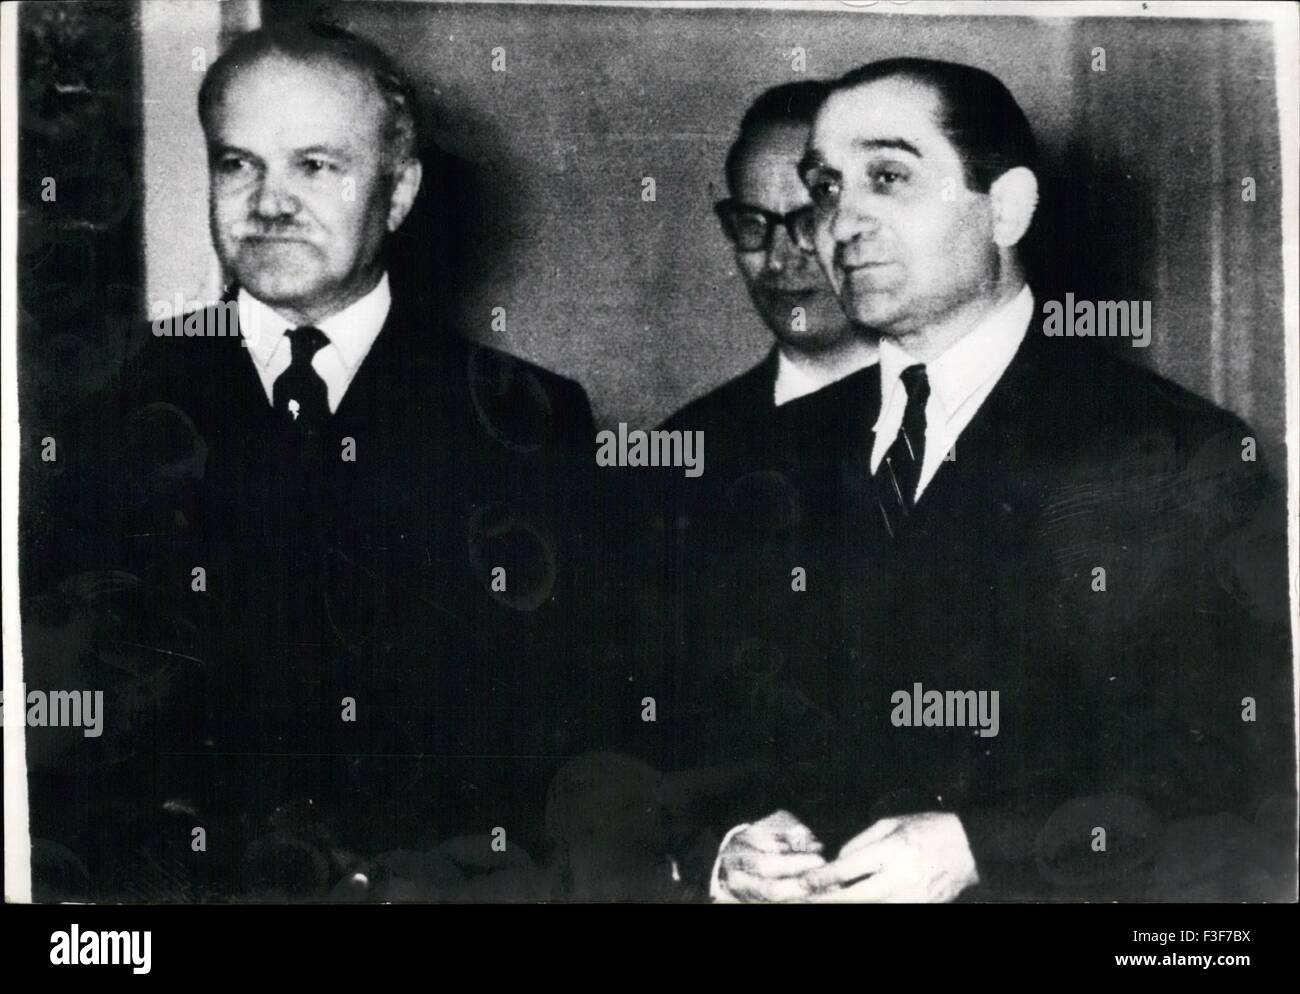 1965 - El Sr. Mendes-France llegó anoche en Ginebra para reunirse con el Sr. Molotov. General Naguib acogió en El Cairo sobre el ''Mercy' tren © Fotos Keystone USA/ZUMAPRESS.com/Alamy Live News Foto de stock